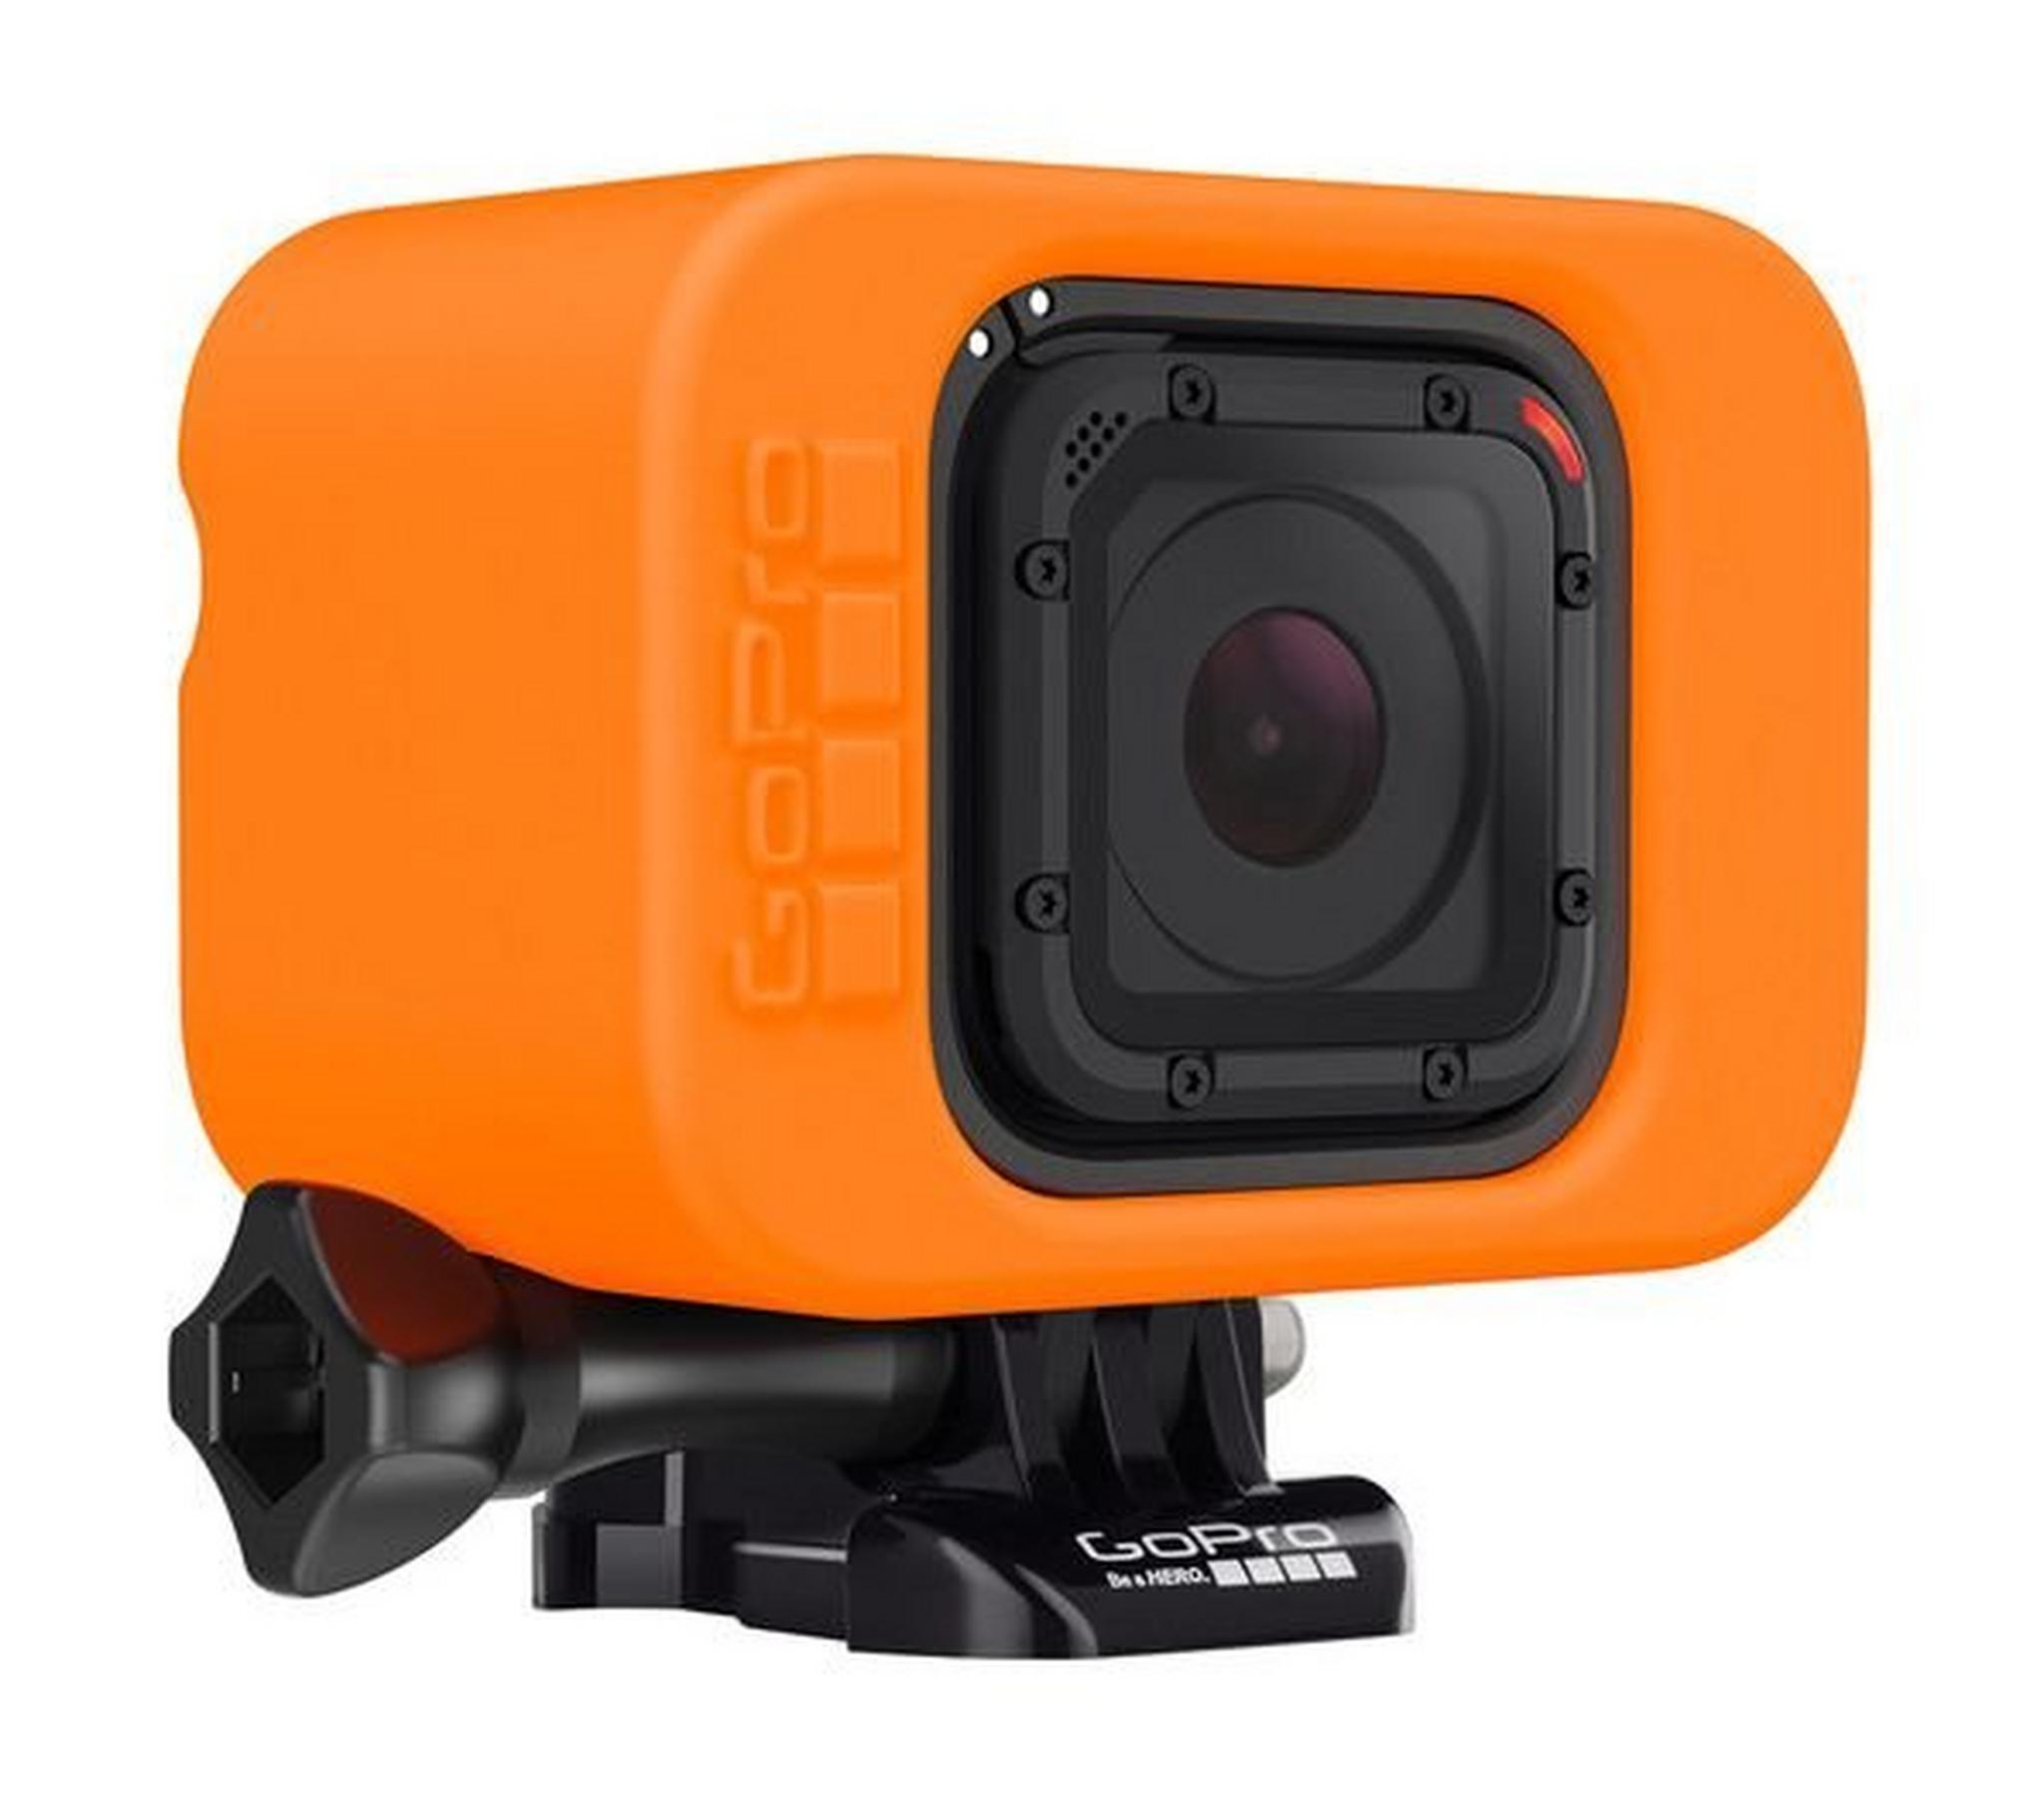 جهاز الطفو جوبرو فلوتي لسلسلة كاميرات جوبرو ٤ - برتقالي - ARFLT-001